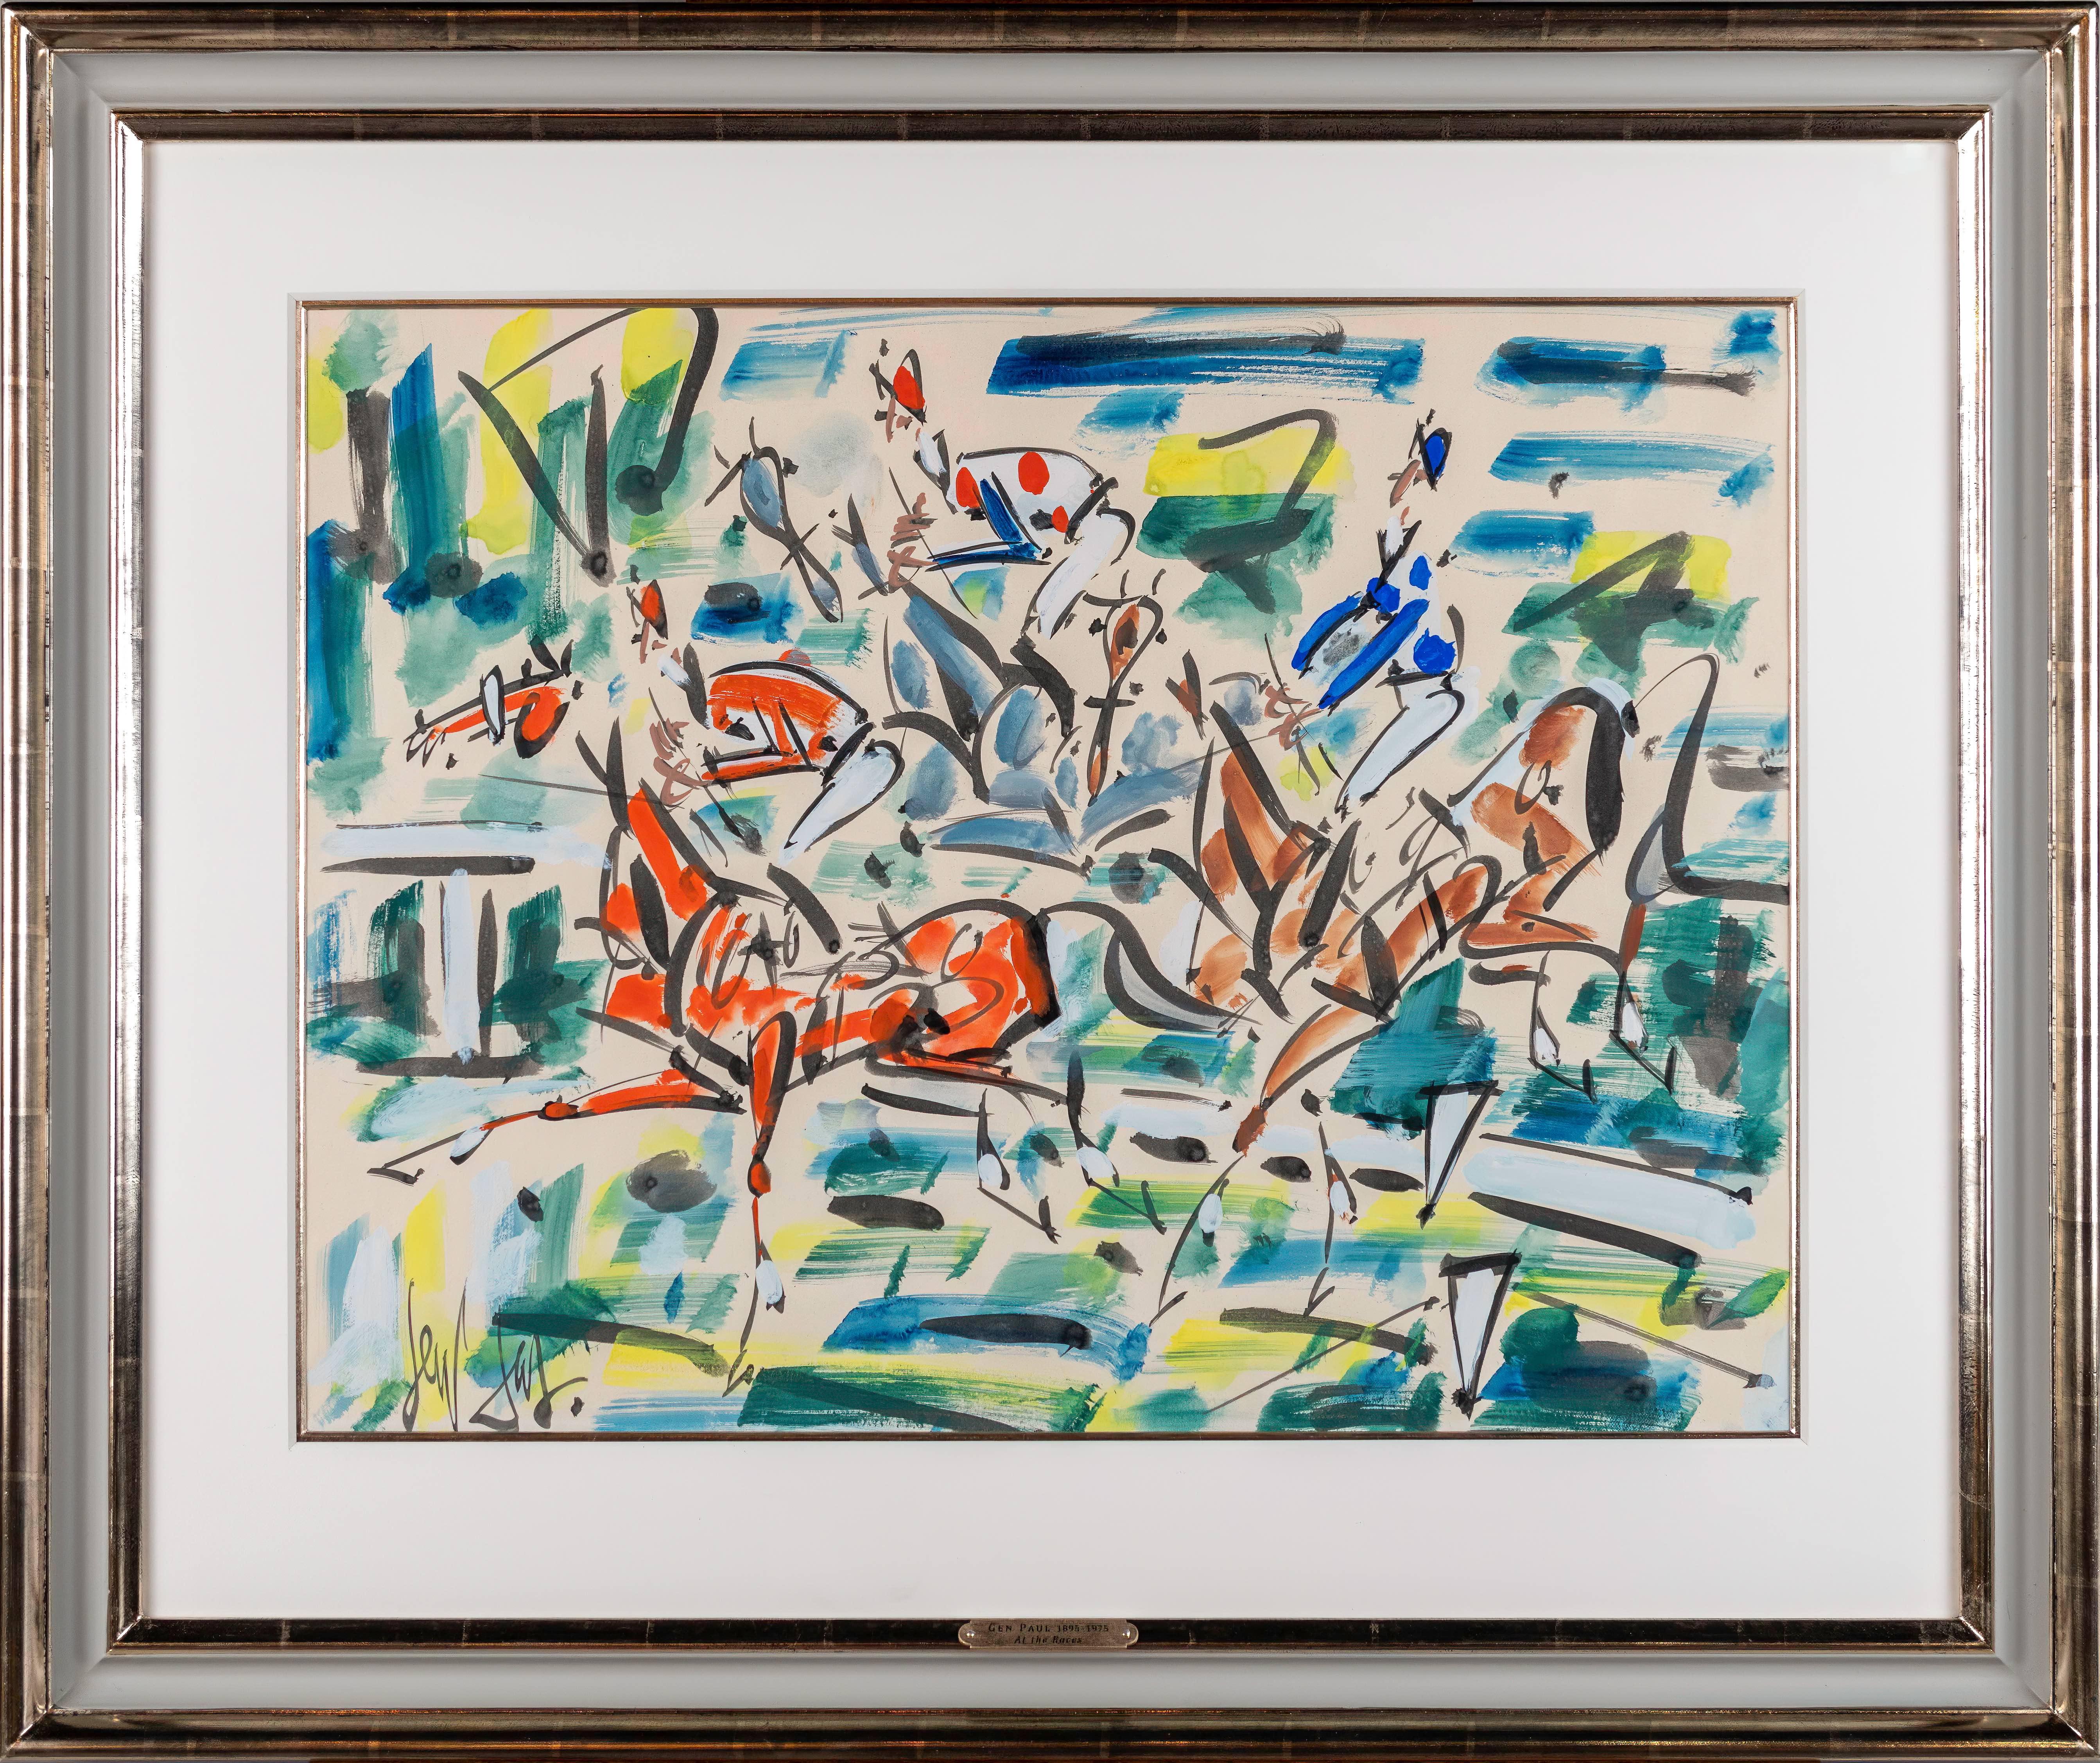 Abstraktes, farbenfrohes Gemälde „At the Races“ mit Pferden und Jockeys, die in Paris rennen 